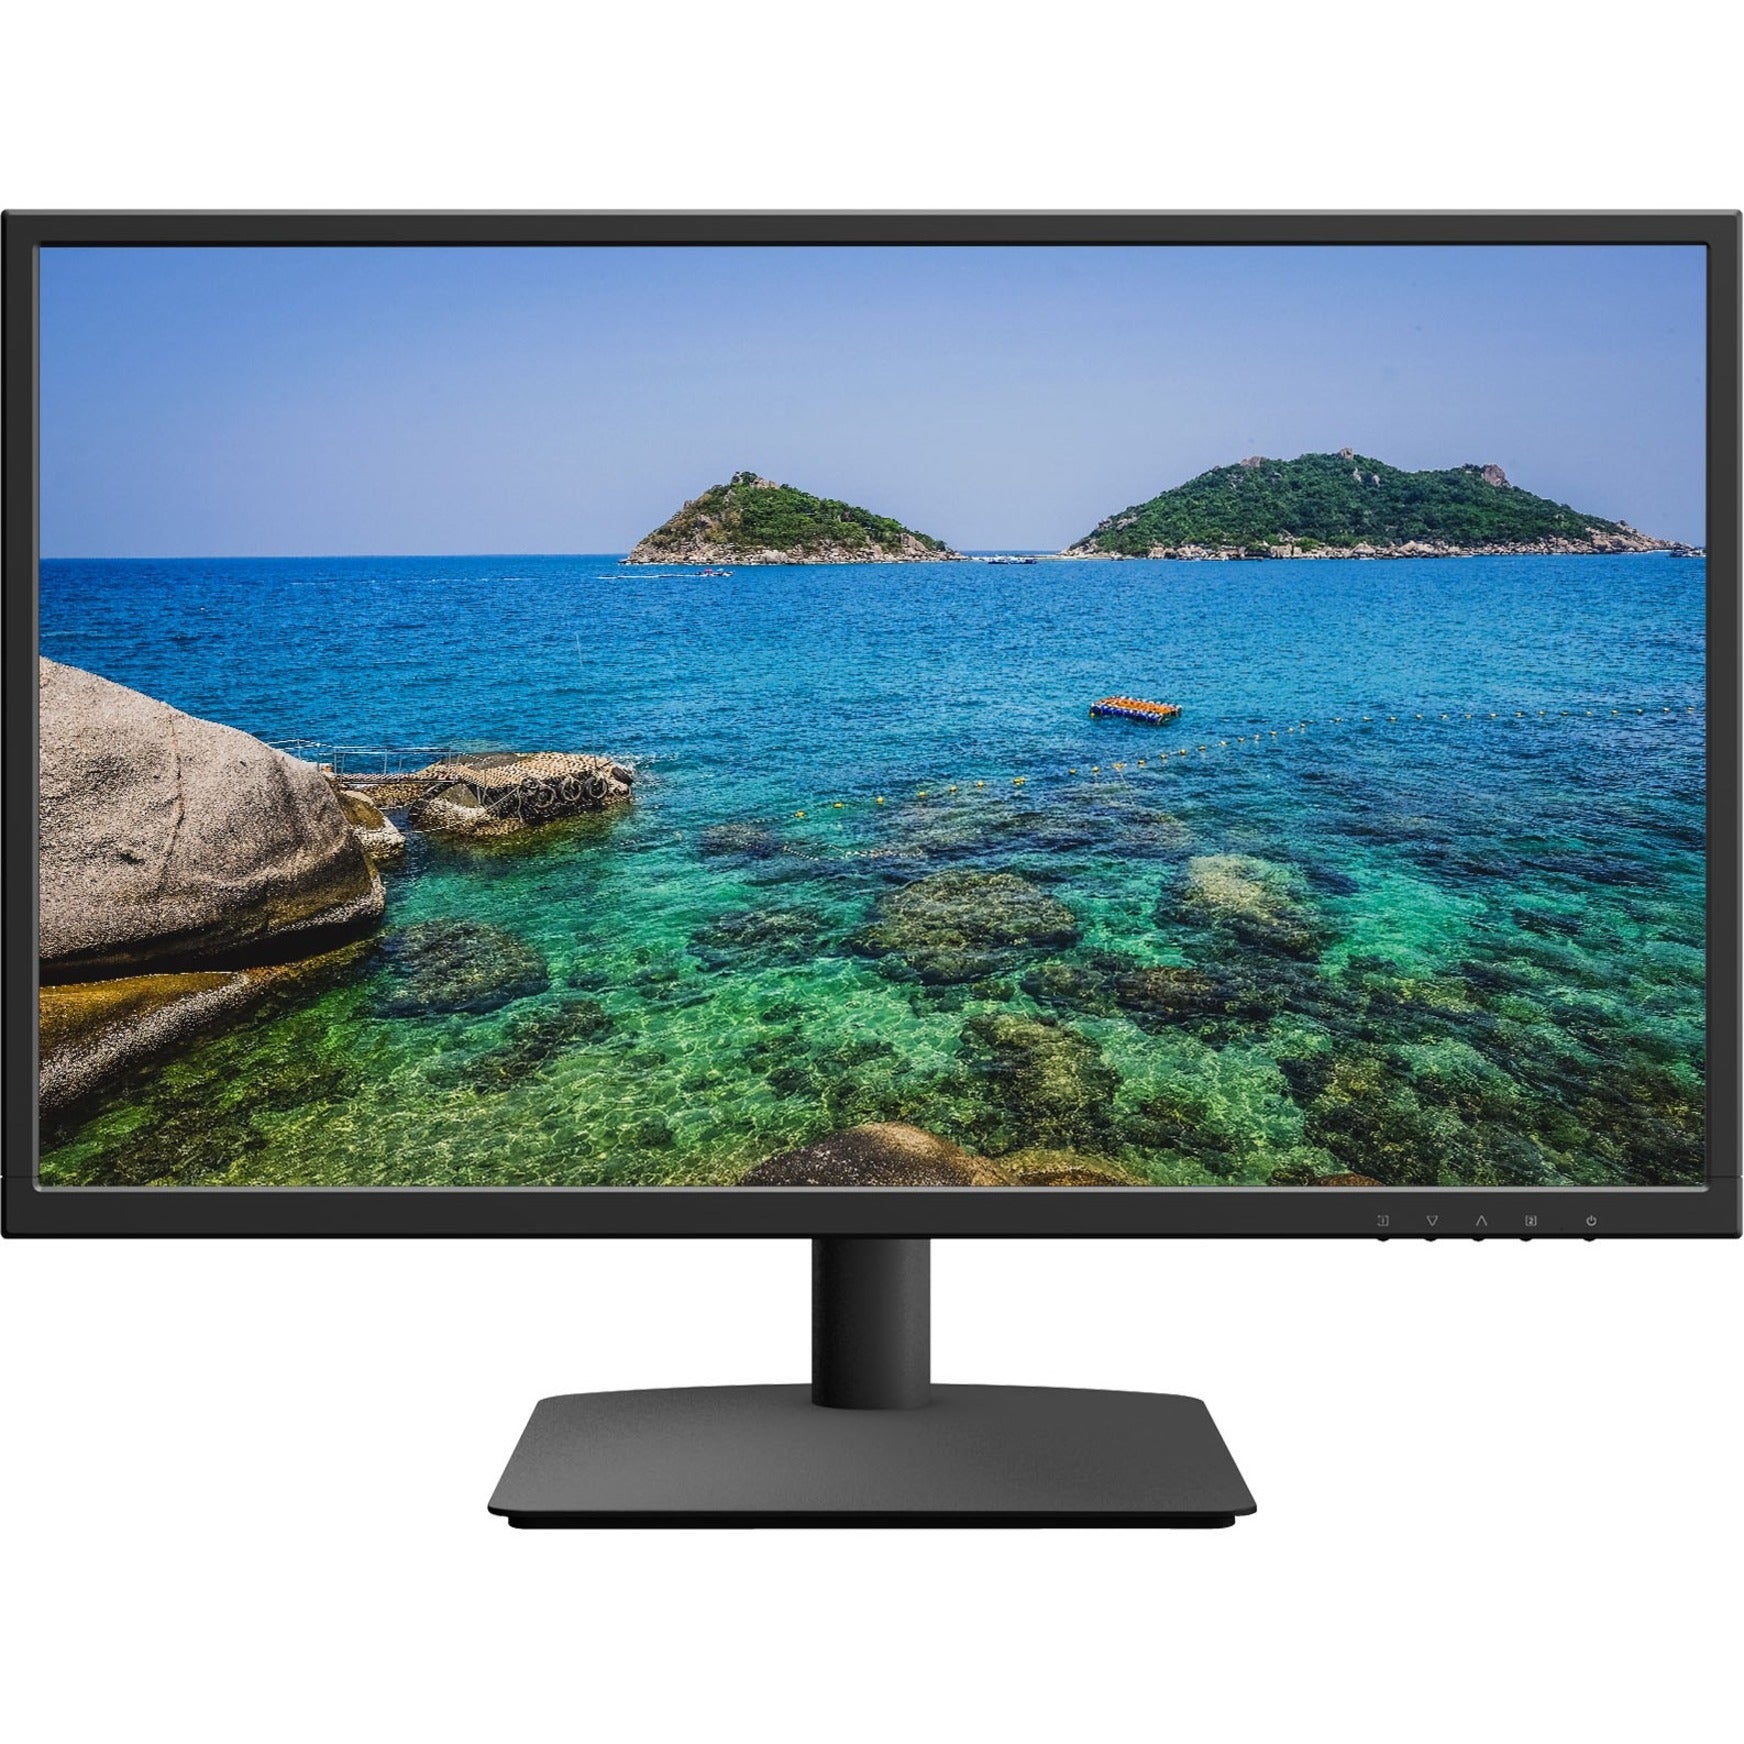 Planar 997-9045-00 PLL2450MW Full HD LCD Monitor, 24" Black, 3-Year Warranty